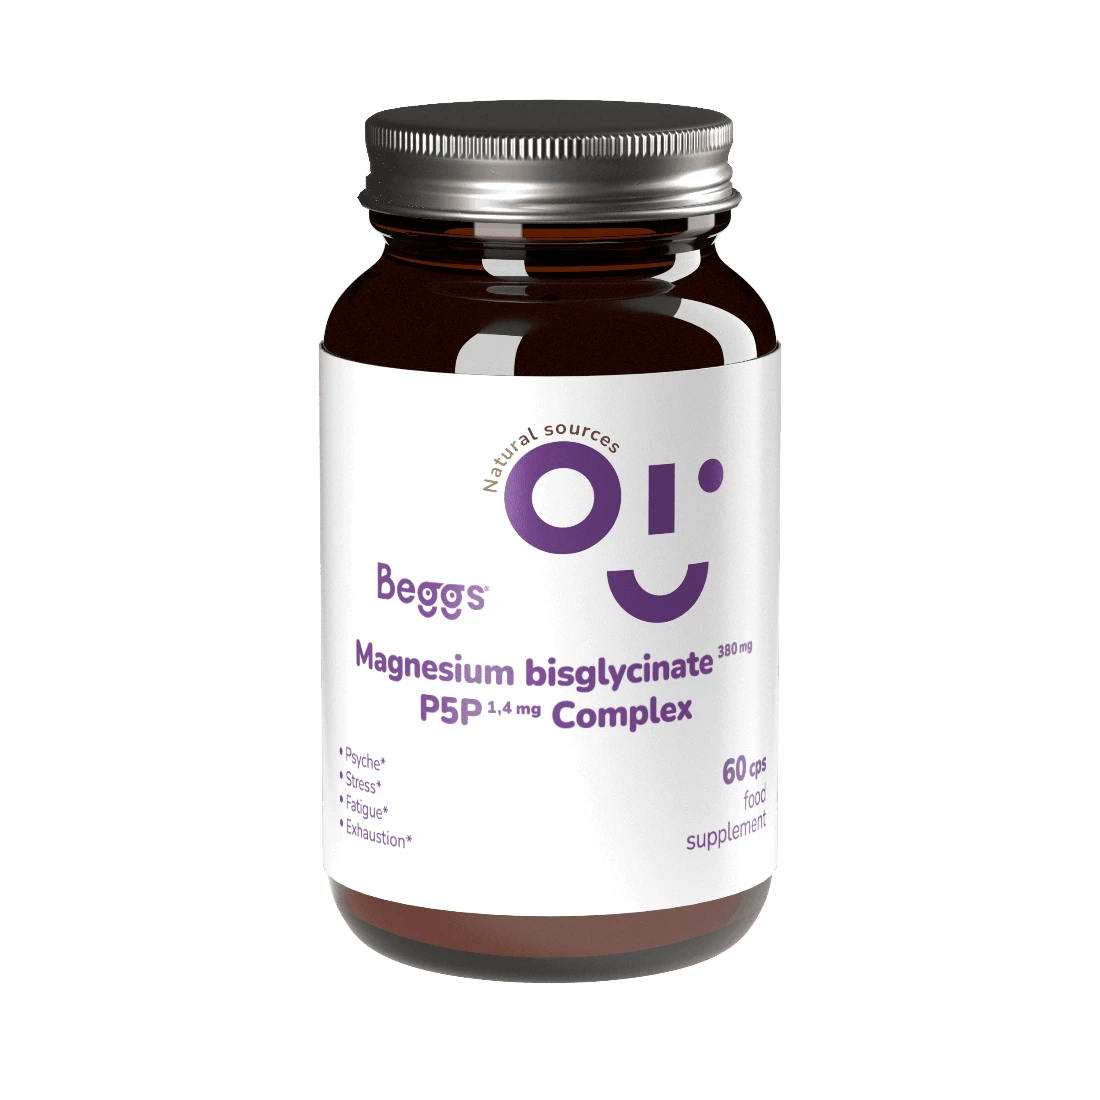 BEGGS_Magnesium_bisglycinate_P5P_COMPLEX_100ml